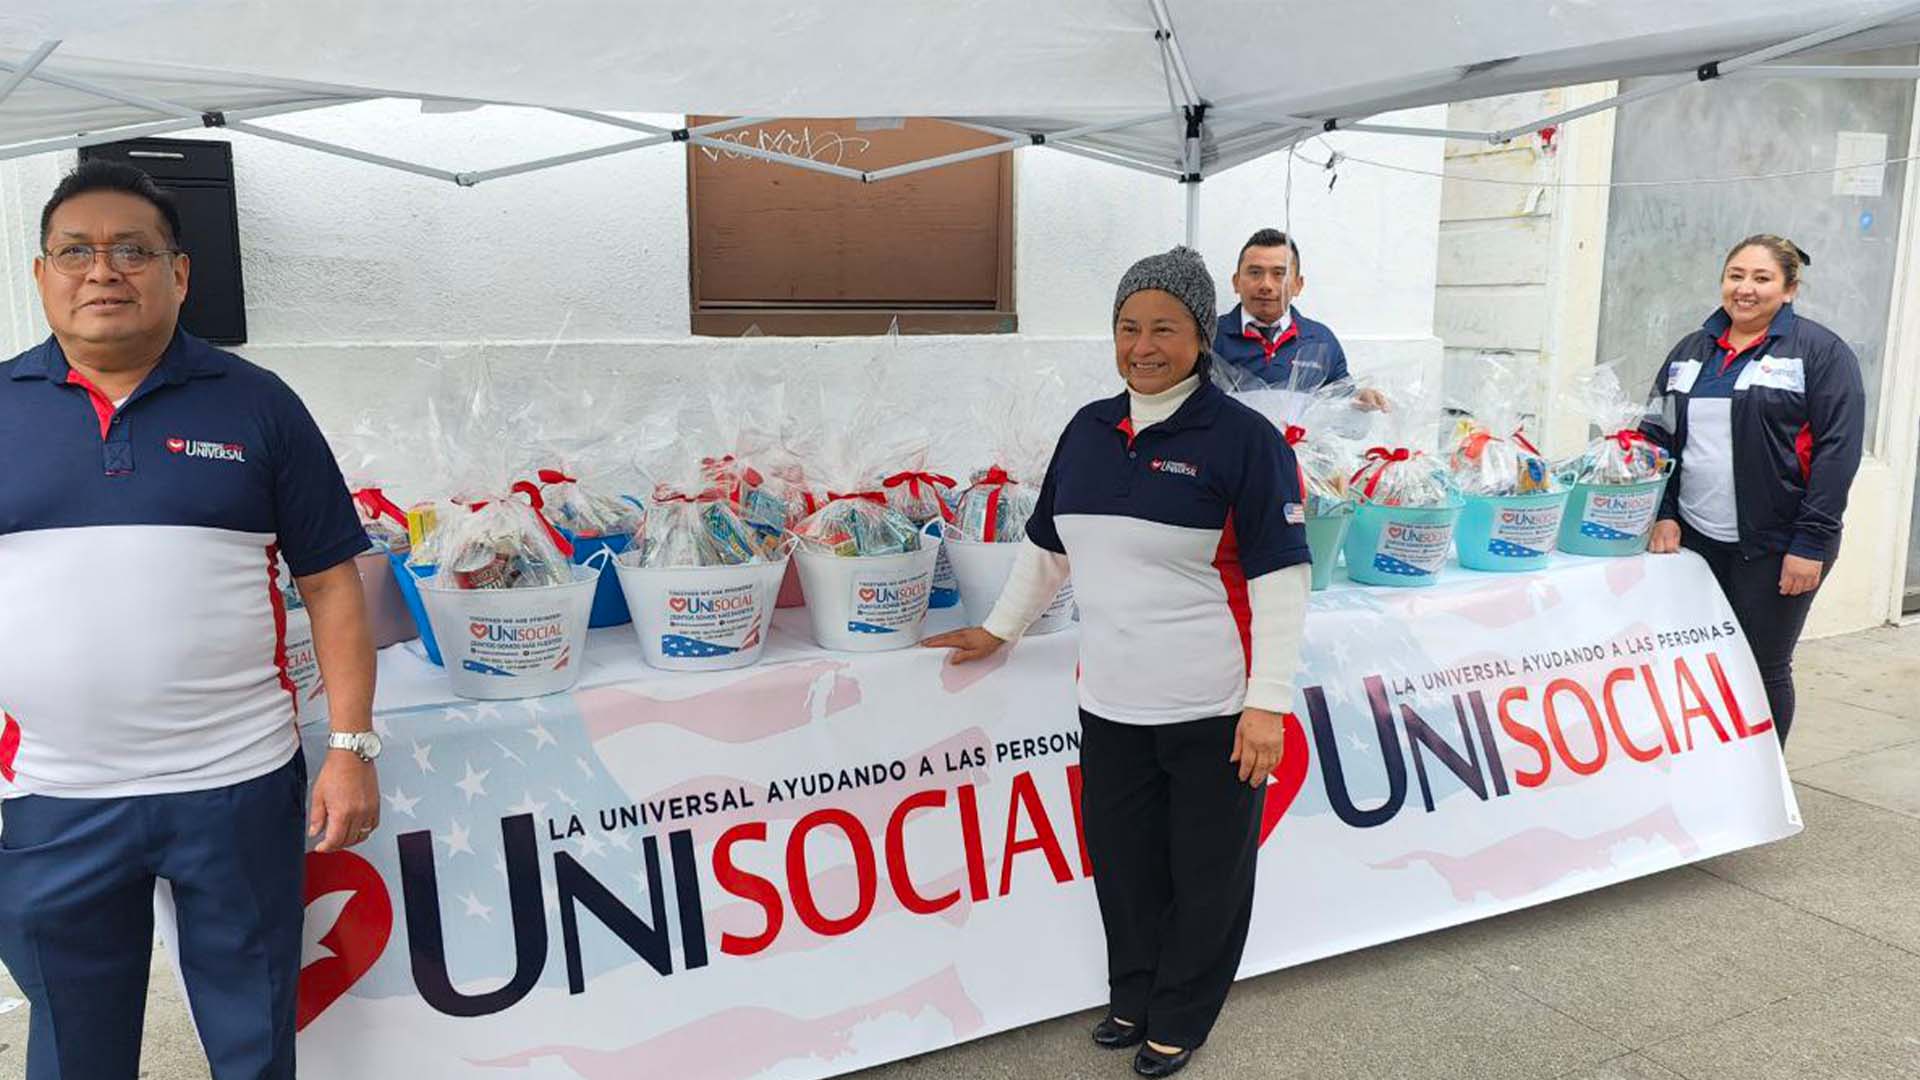 EVG a través del proyecto “Unisocial” brindaron alimentos a toda la comunidad en San Francisco, California